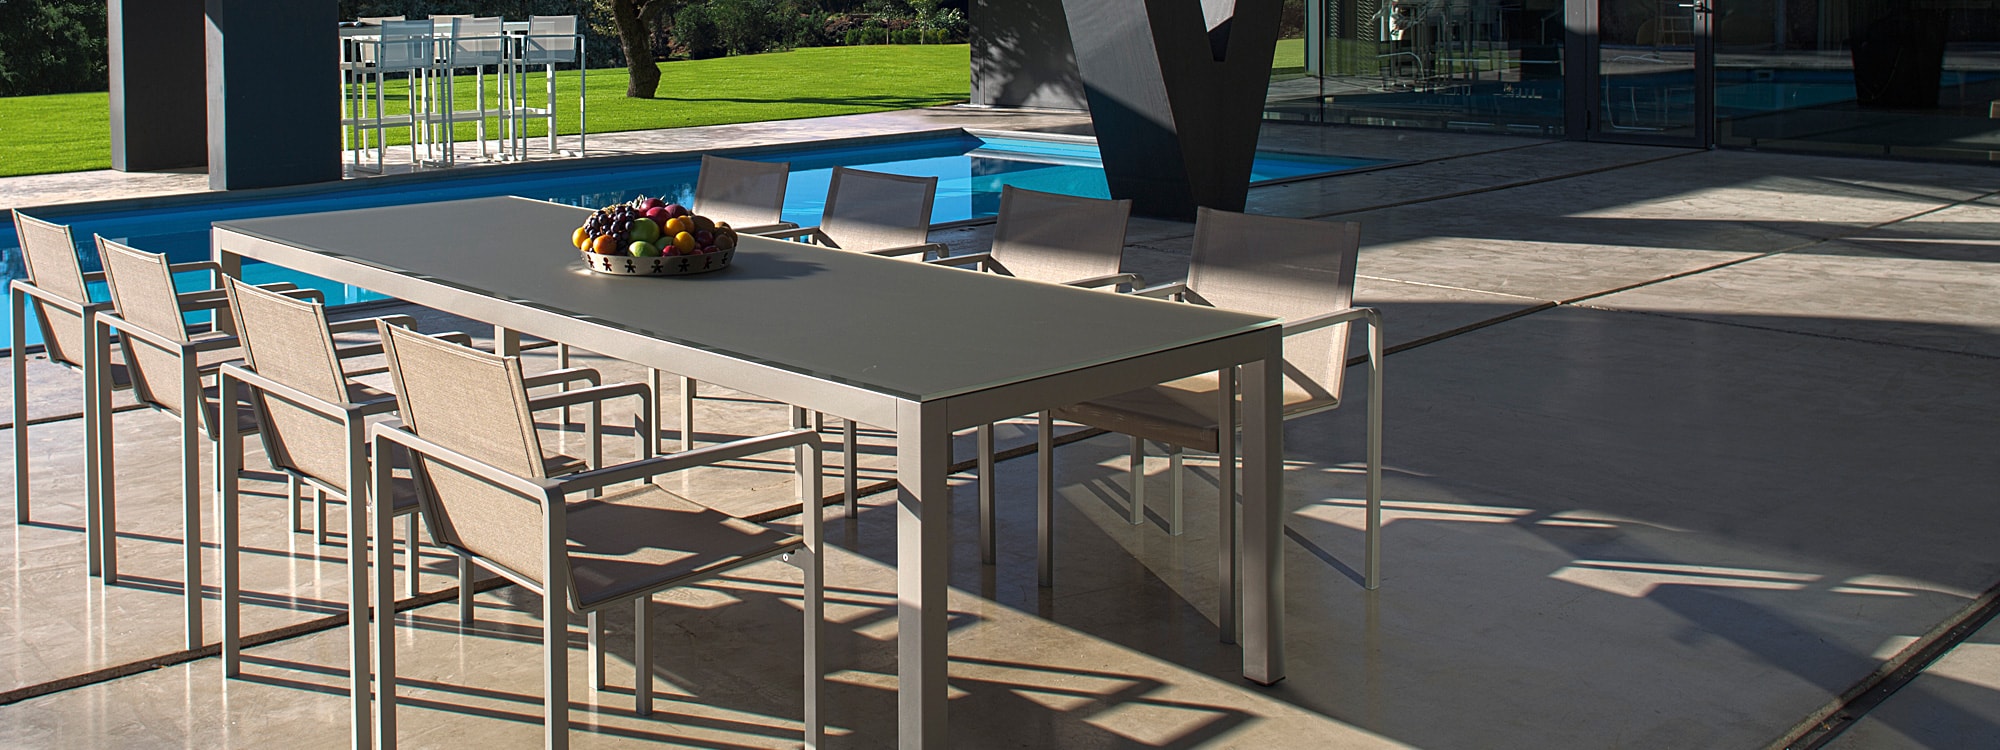 Alura & Taboela modern garden dining furniture by Royal Botania outdoor furniture includes aluminium garden chair & high quality garden table